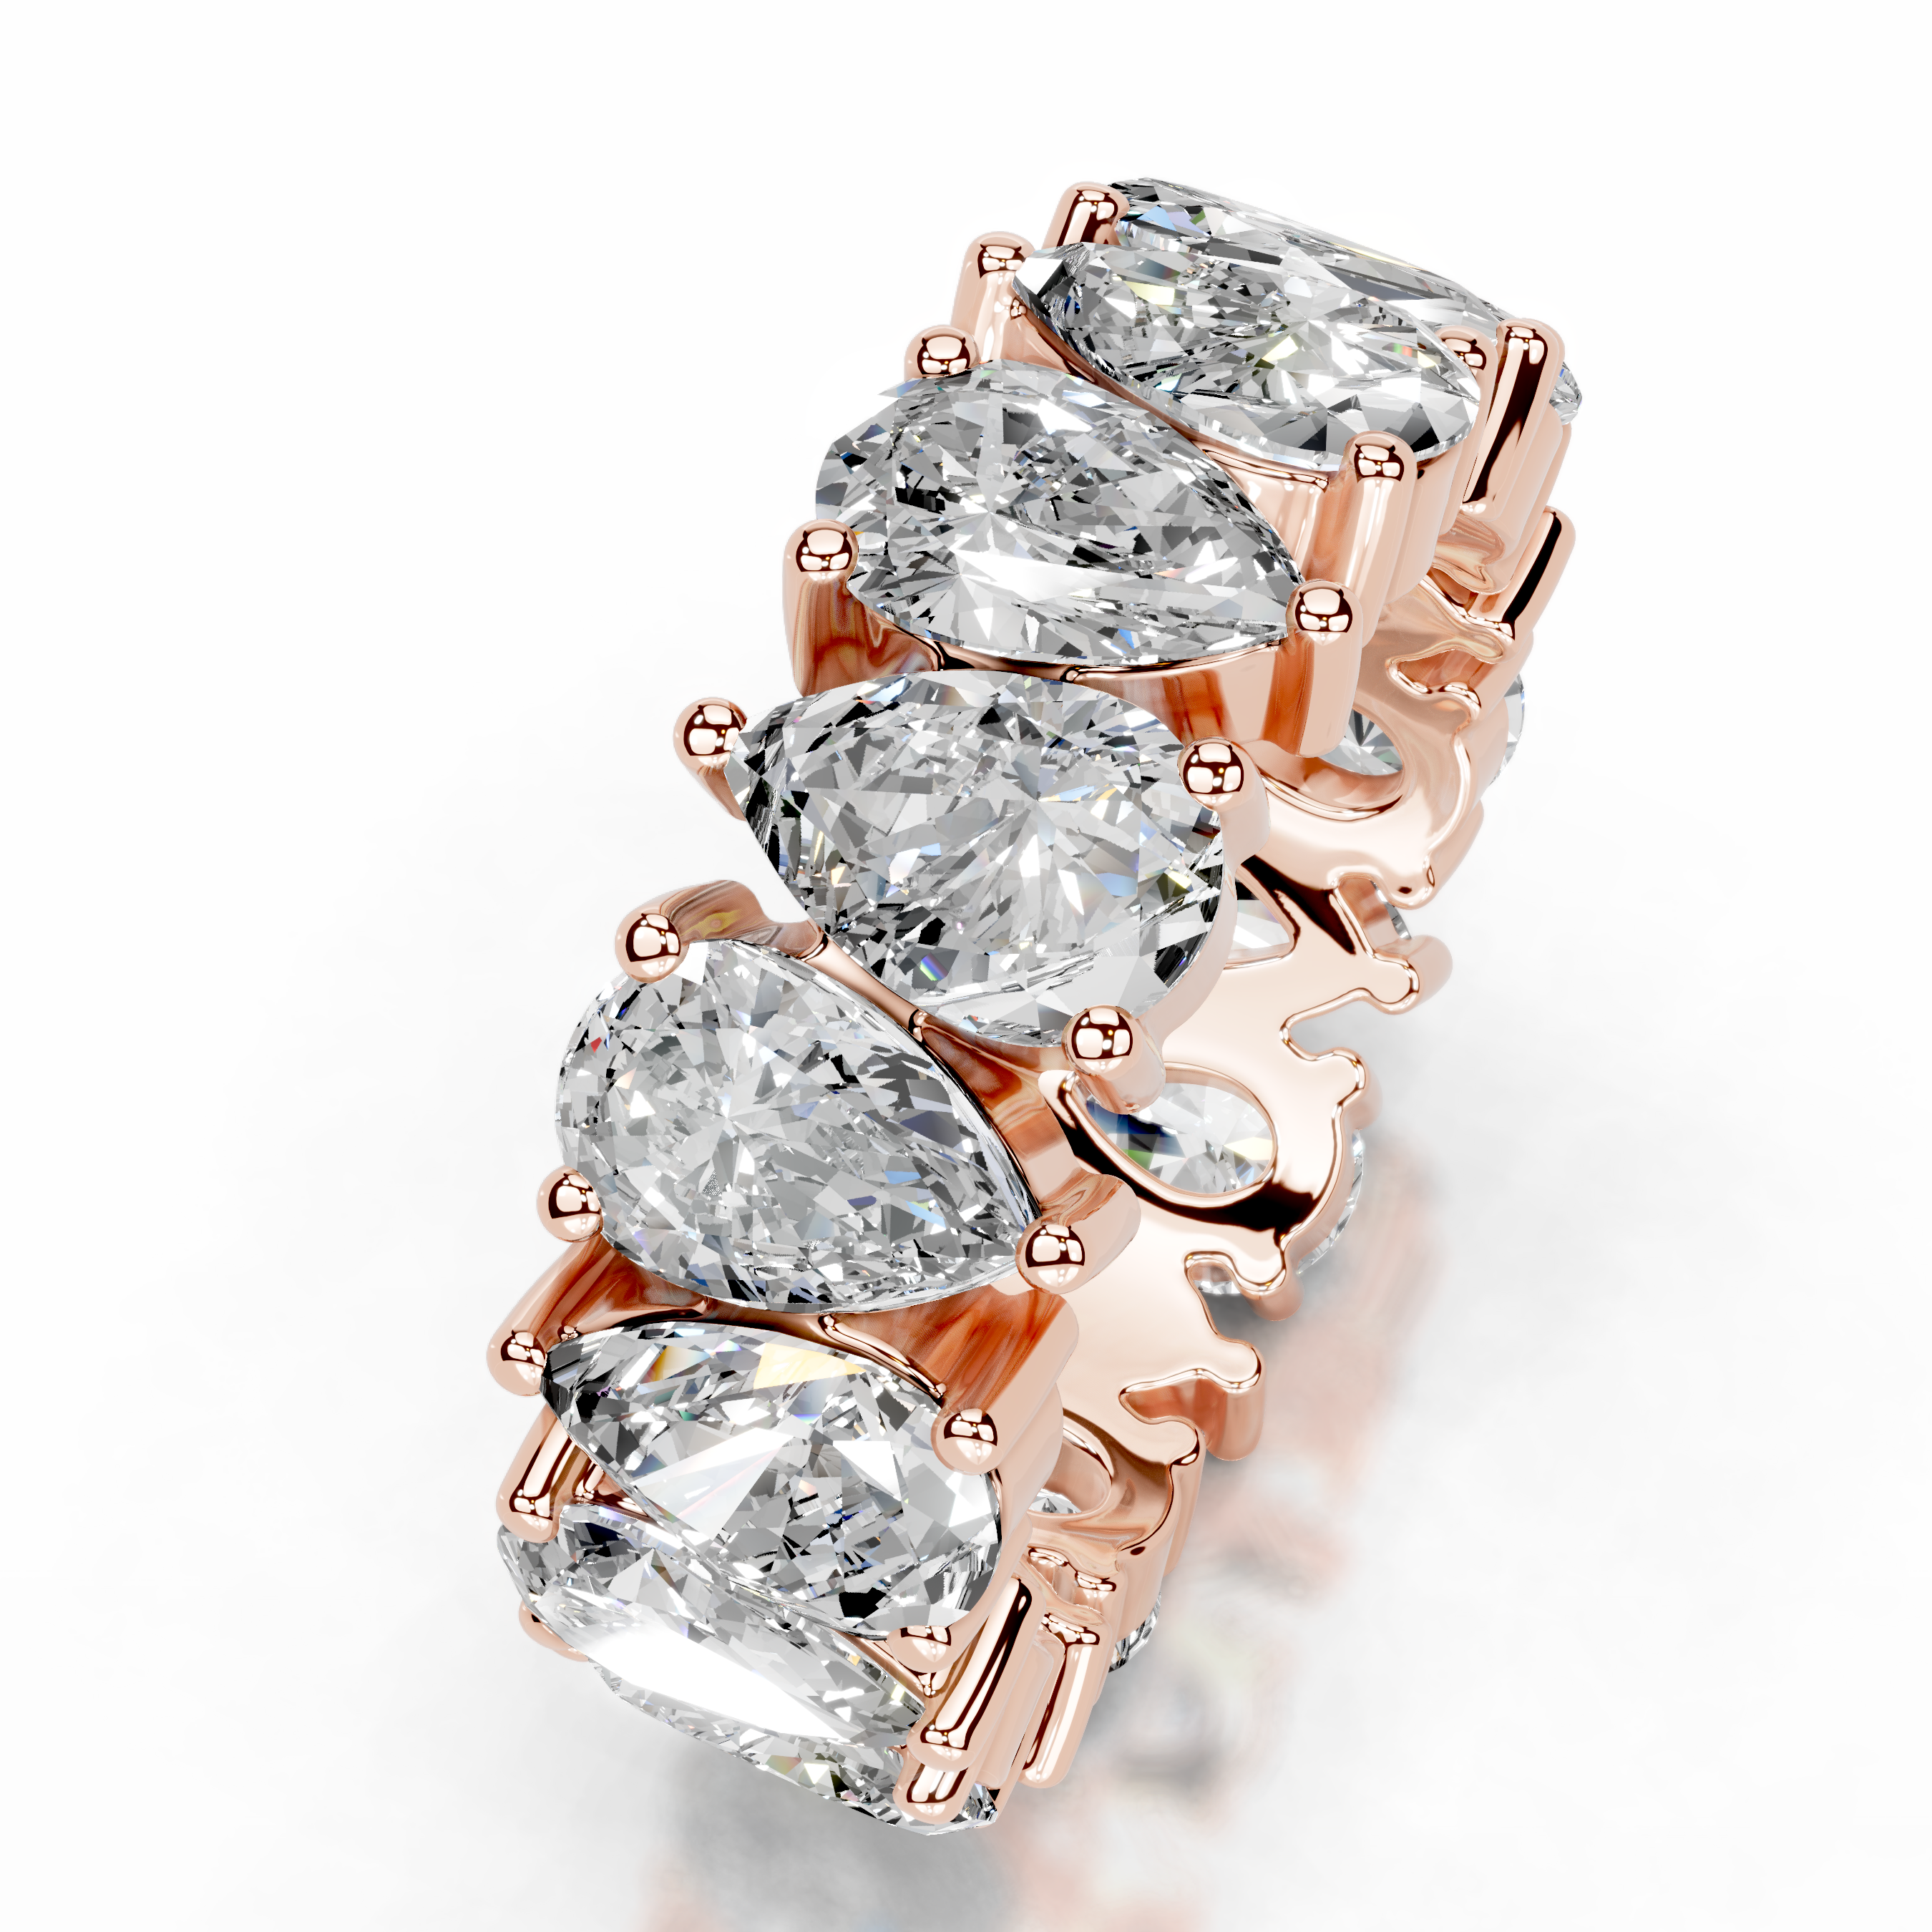 Sarah Diamond Wedding Ring   (6 Carat) -14K Rose Gold